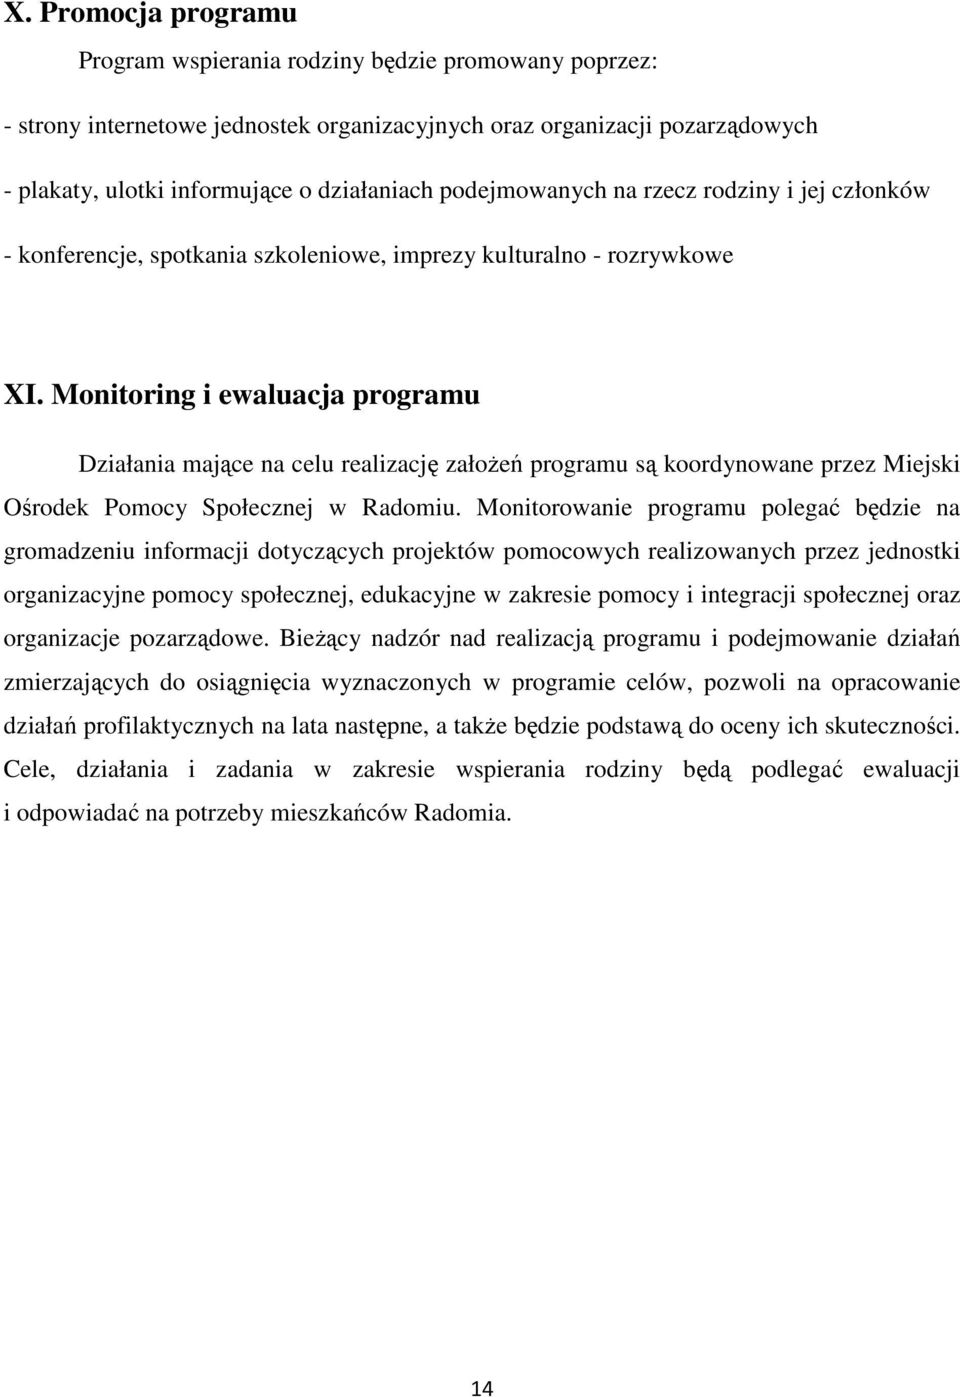 Monitoring i ewaluacja programu Działania mające na celu realizację załoŝeń programu są koordynowane przez Miejski Ośrodek Pomocy Społecznej w Radomiu.